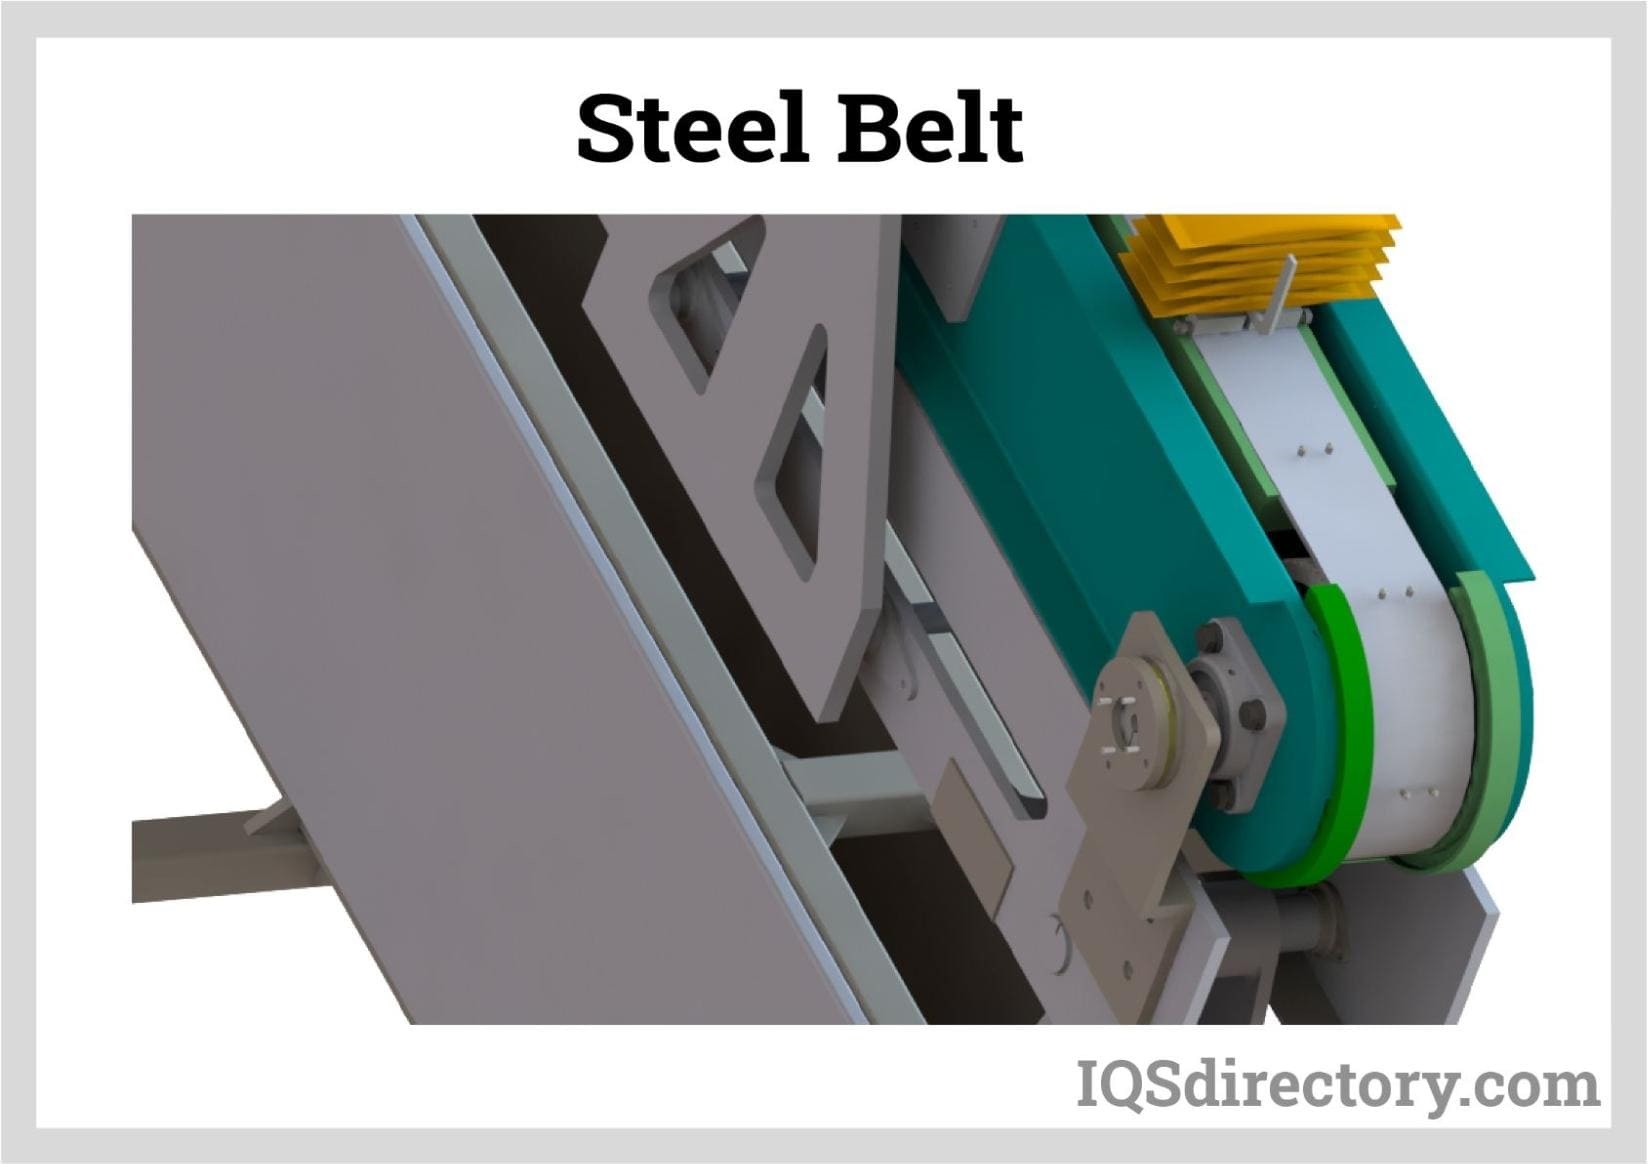 Steel Belt